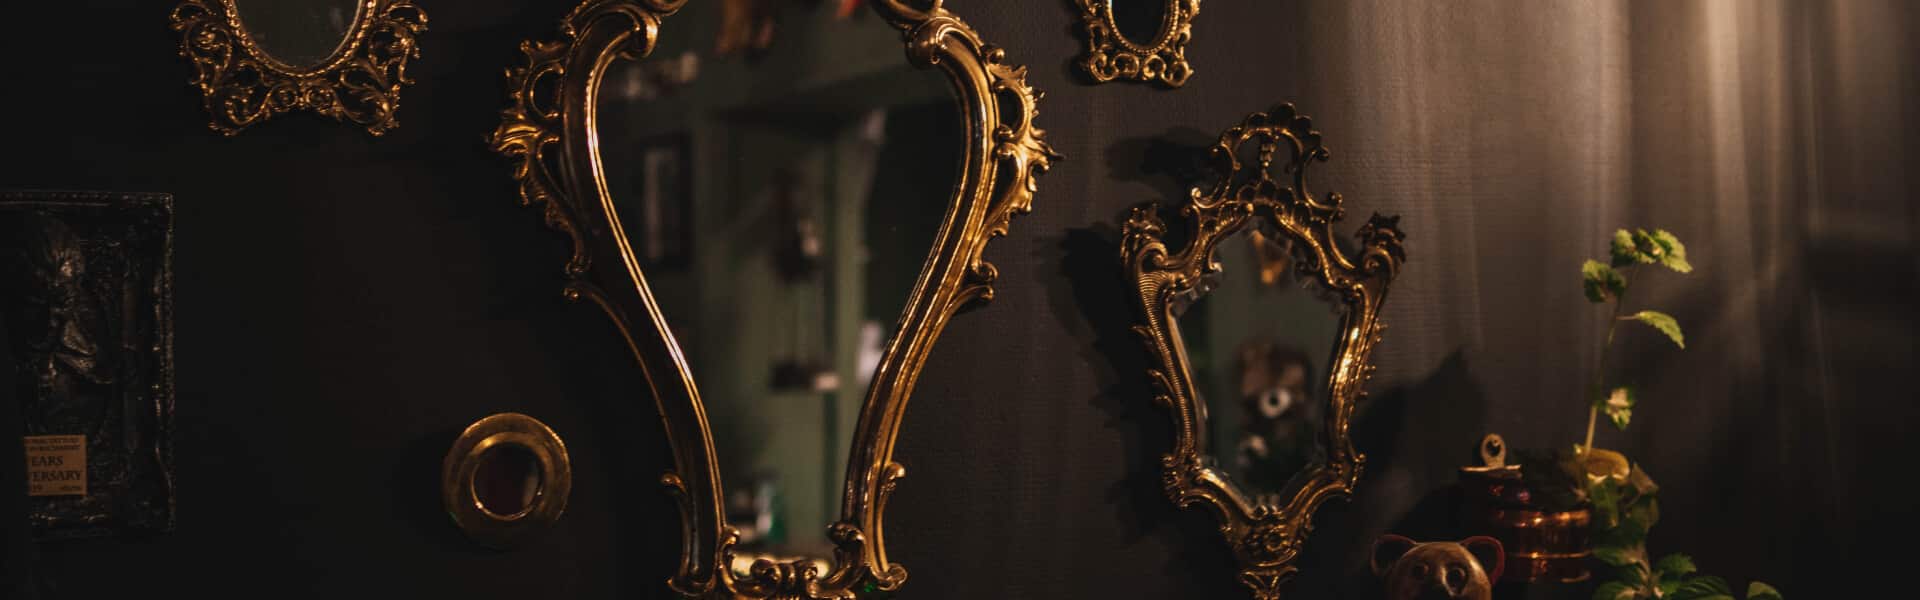 miroir ancien doré après rénovation du cadre et peinture